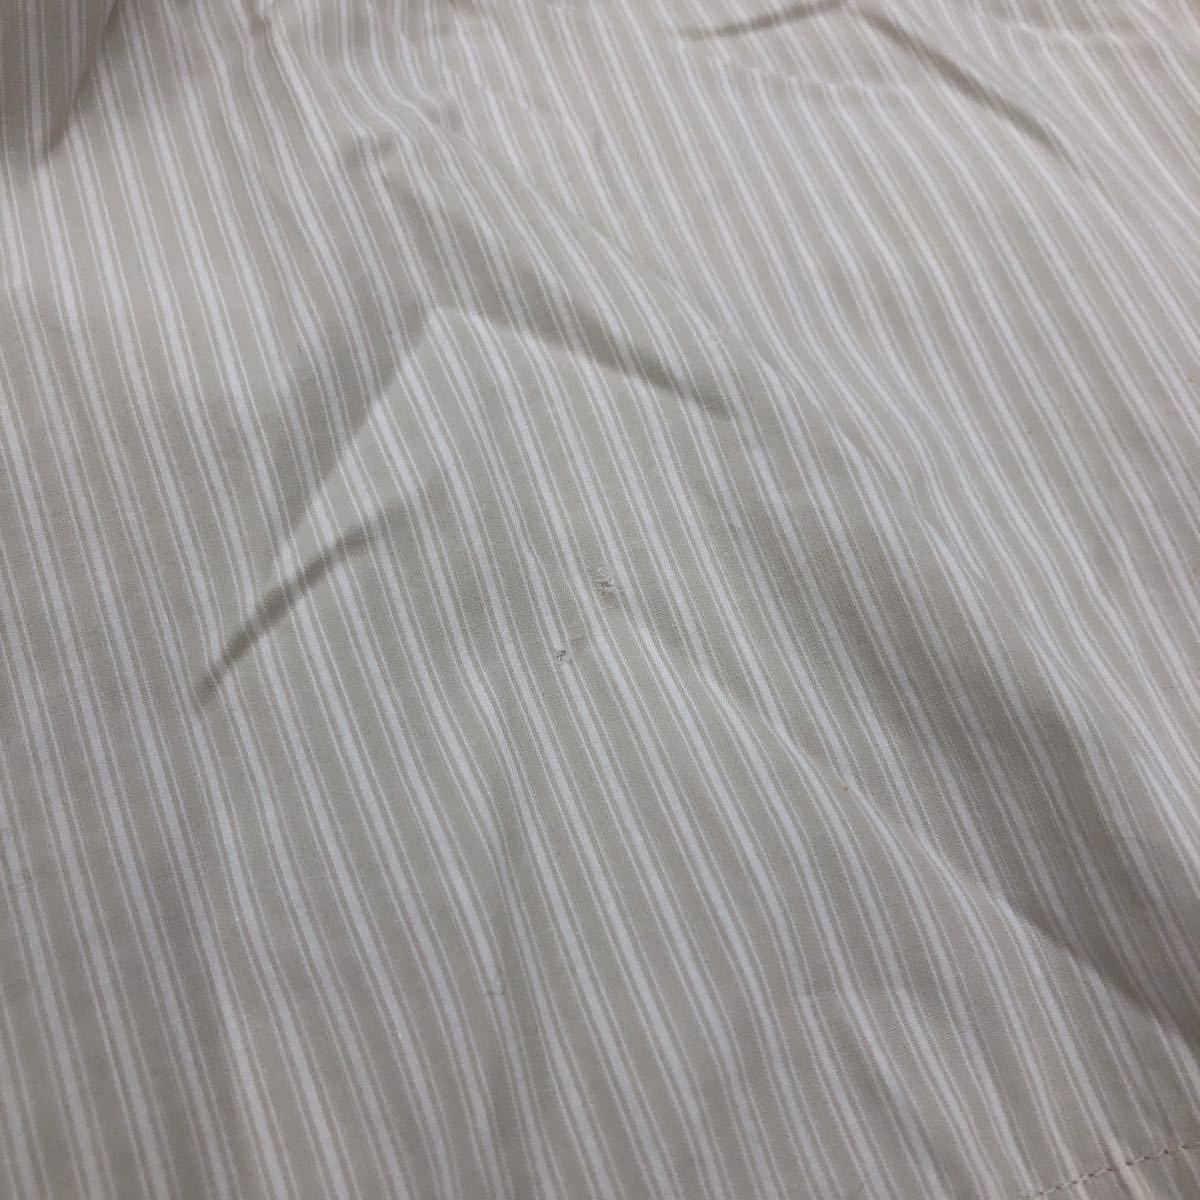 Gf26 Hug O War Hugowar Skipper shirt blouse pull over cotton 100% stripe pattern easy * lady's for women 